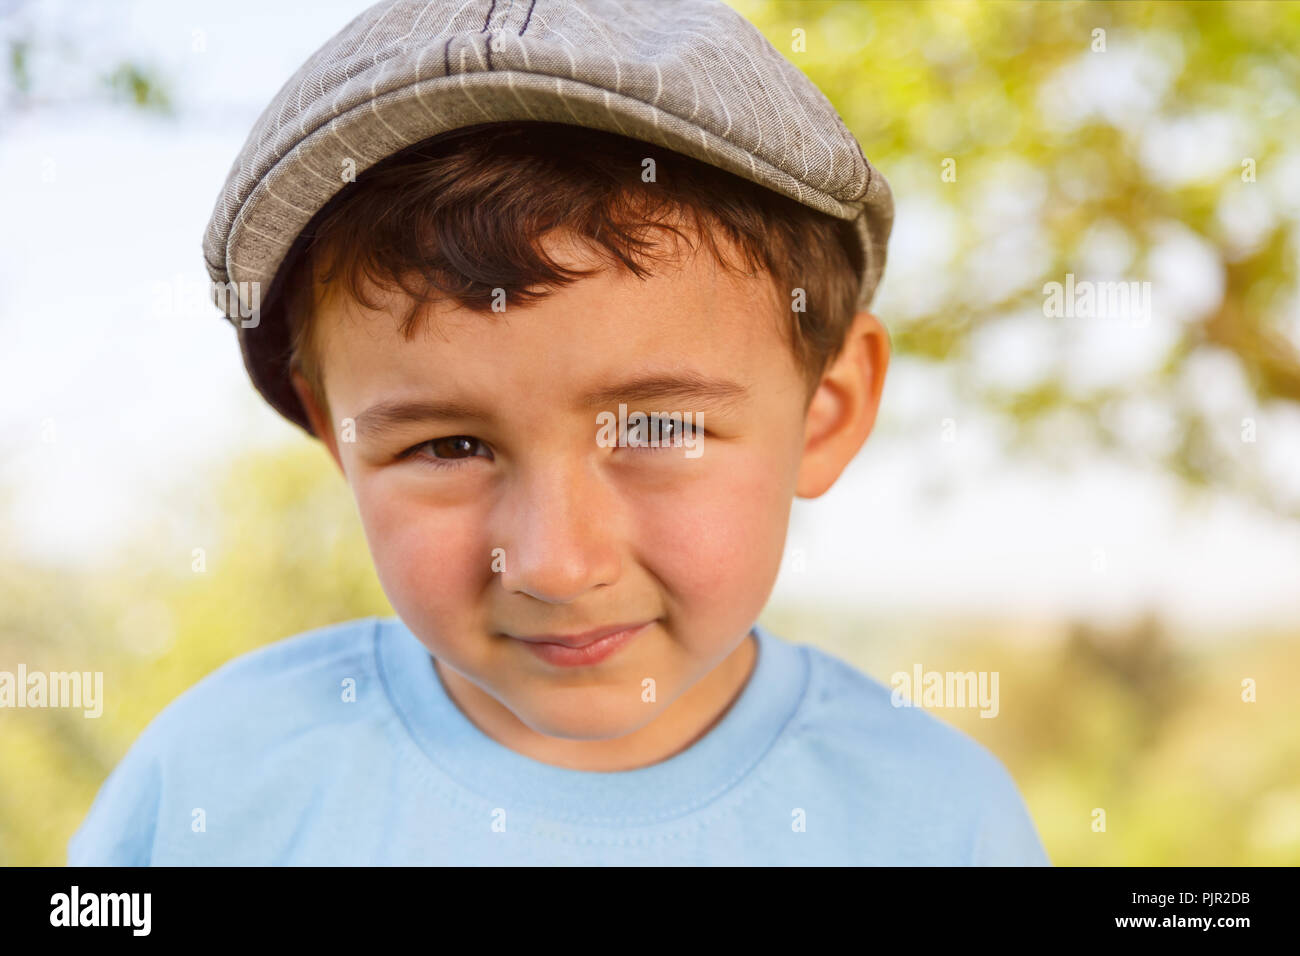 Ritratto di un bambino kid ragazzino con cappuccio faccia esterna all'esterno al di fuori della natura Foto Stock